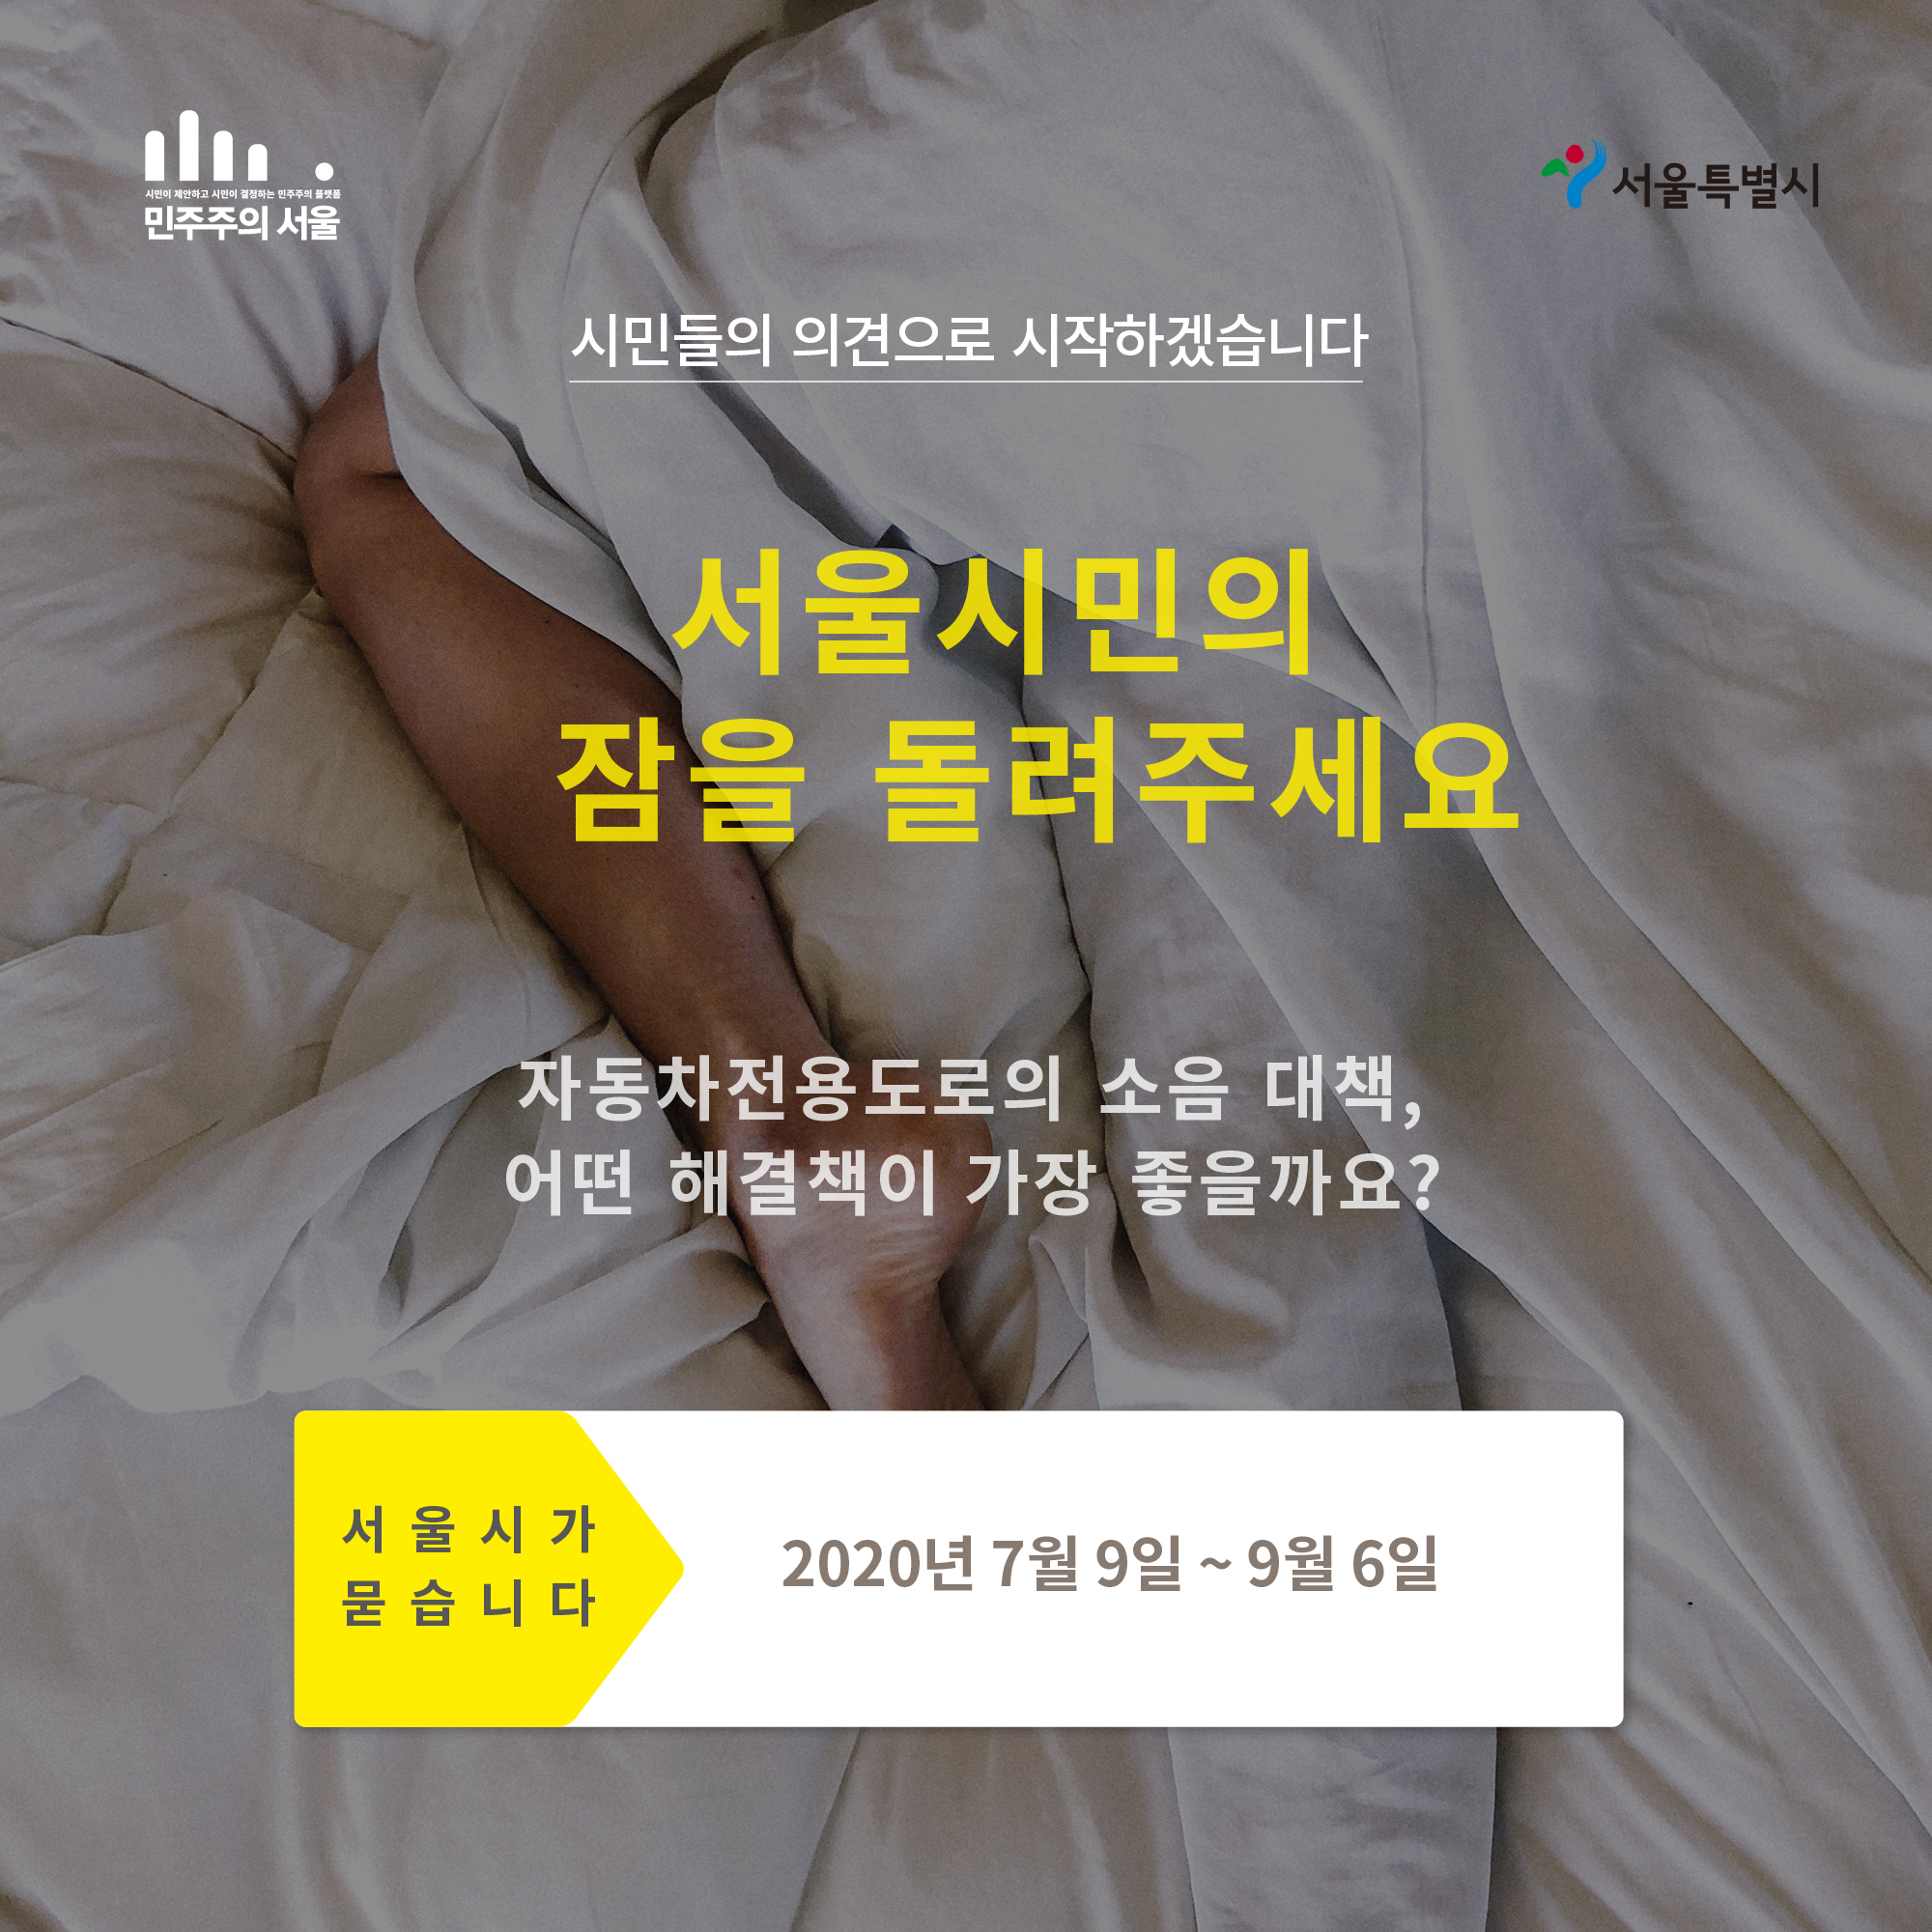 시민들의 의견으로 시작하겠습니다. 서울시민의 잠을 들려주세요 자동차전용도로의 소음 대책, 어떤 해결책이 가장 좋을까요? 서울시가 붇습니다 2020년 7월 9일 ~ 9월 6일